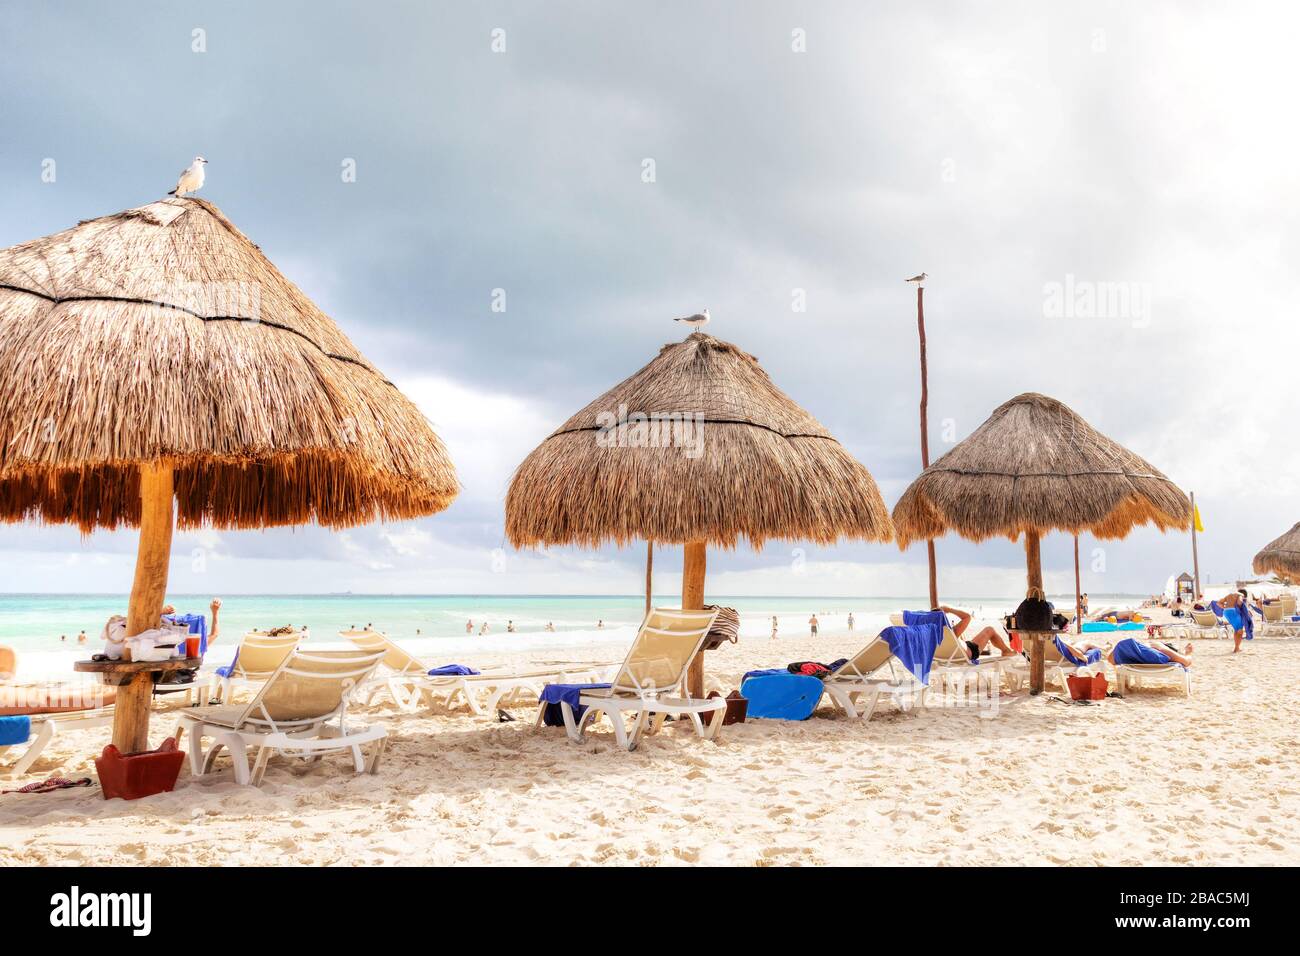 Les amateurs de plage méconnus affluent vers les plages tropicales de la Riviera Maya près de Cancun, au Mexique, lors de la populaire escapade hivernale sur la côte des Caraïbes. Banque D'Images